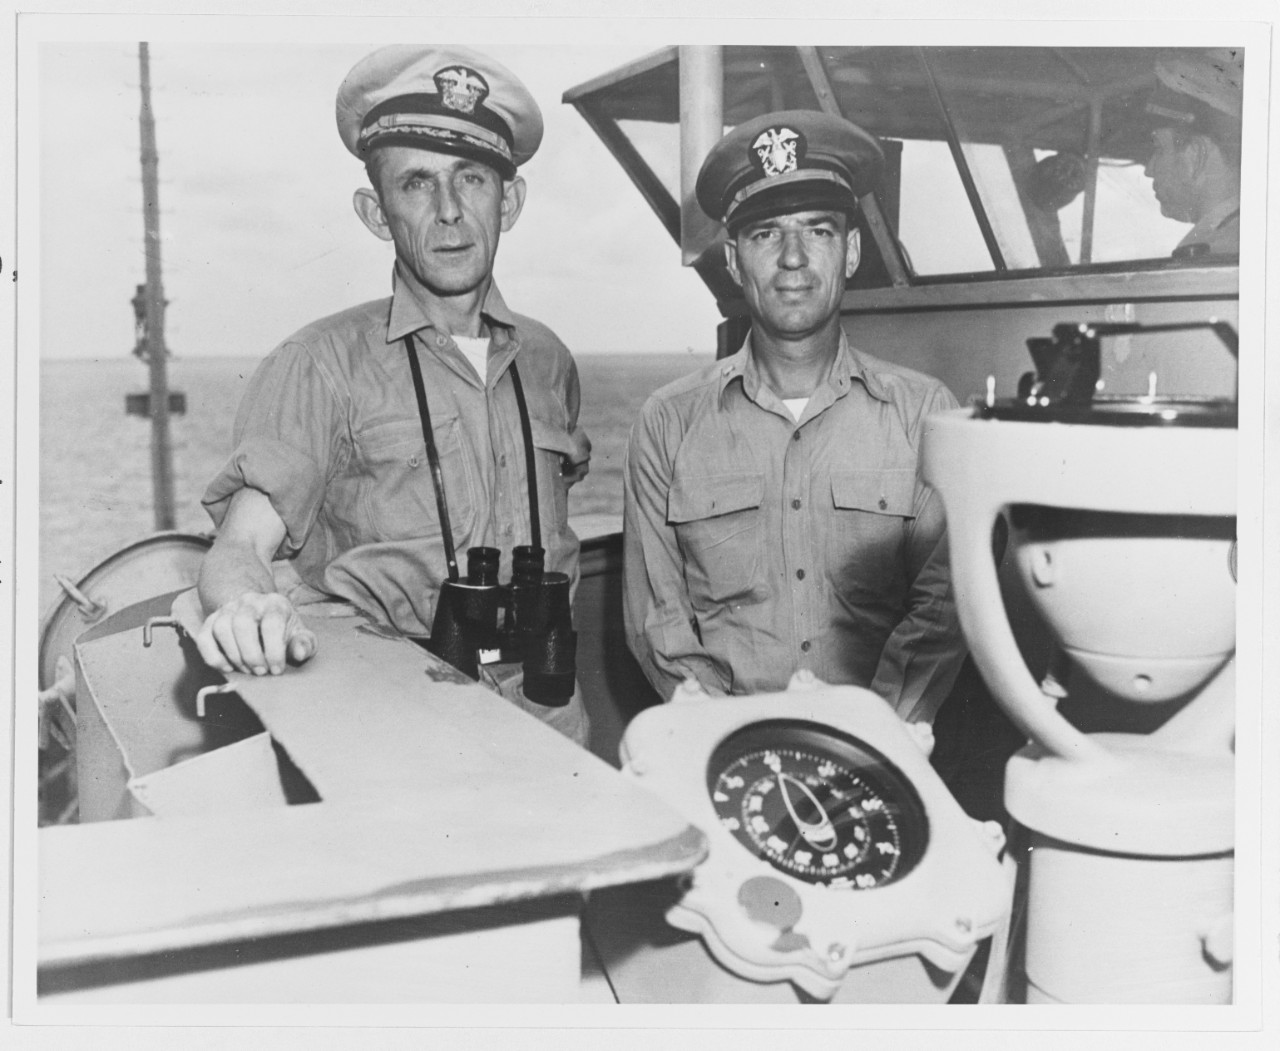 Photo #: 80-G-49177  Captain Daniel V. Gallery, Jr., USN and  Lieutenant Junior Grade Albert L. David, USN